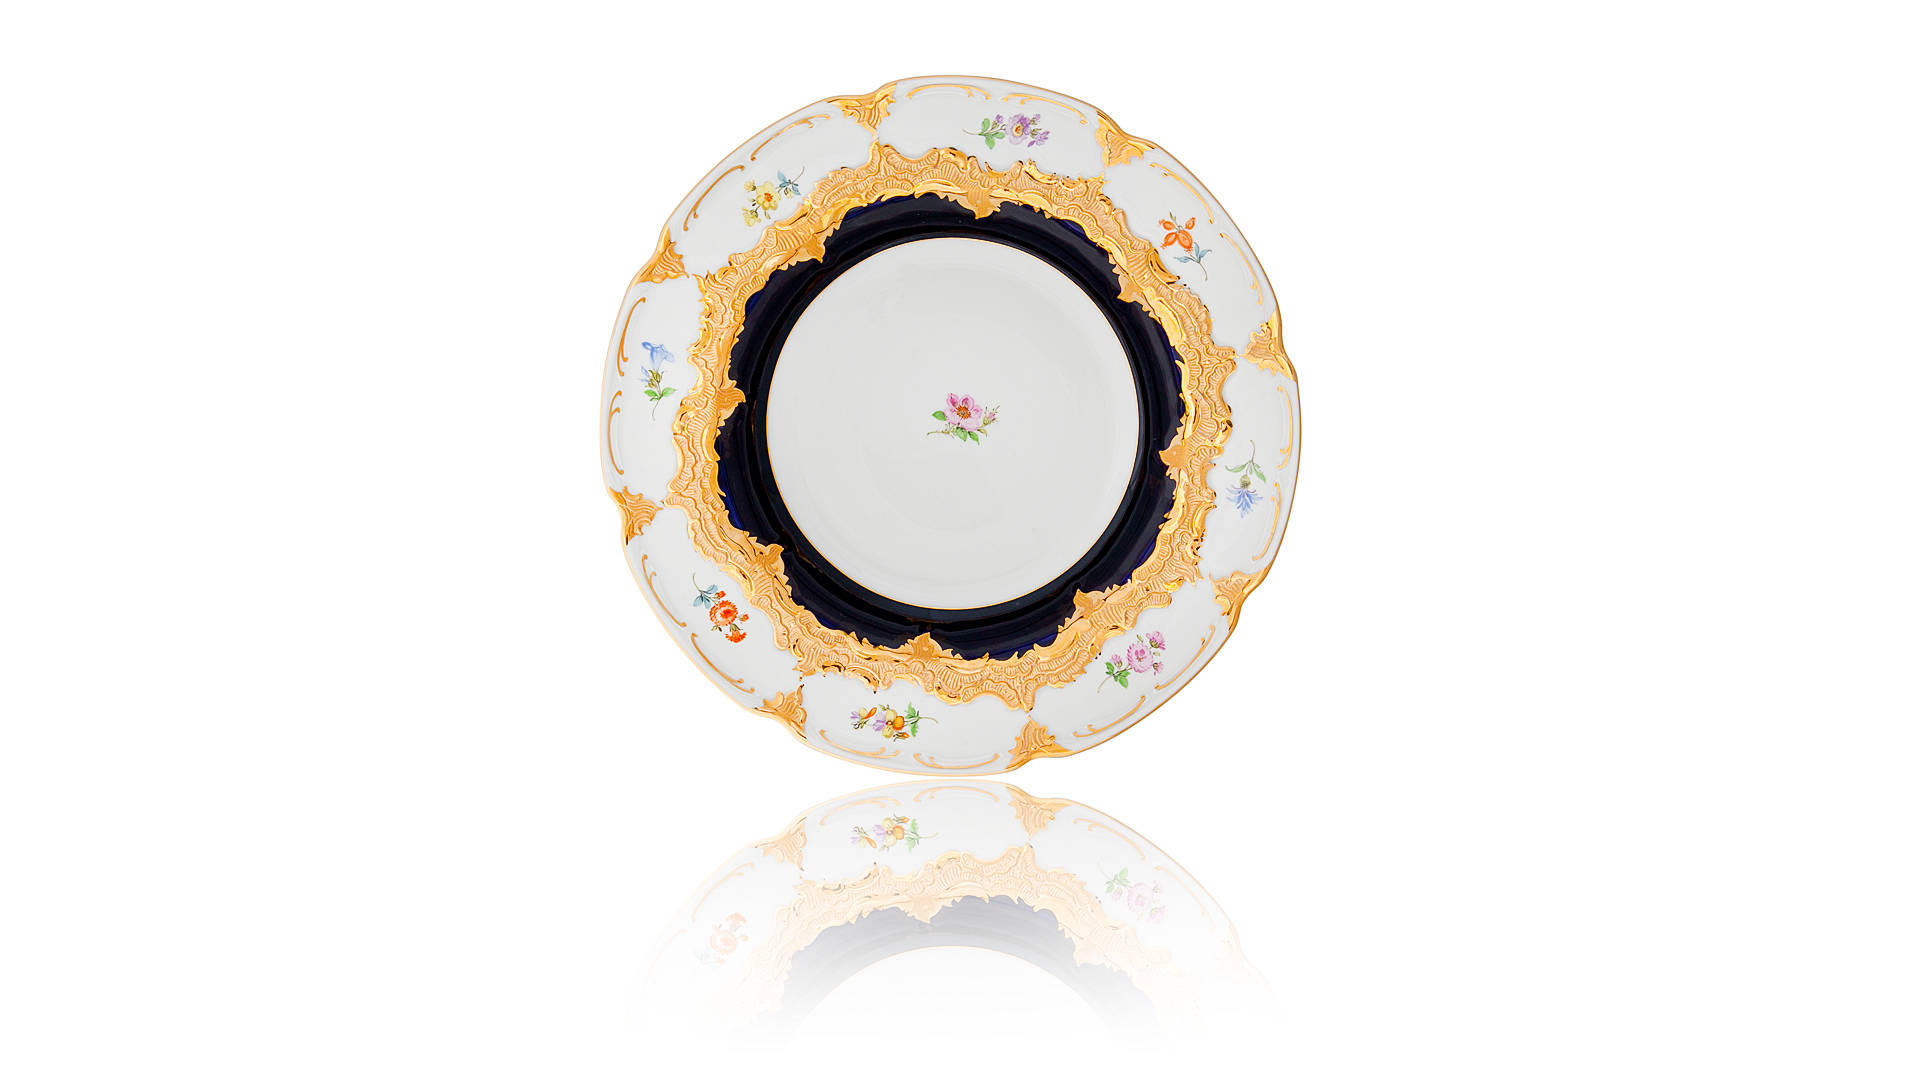 Тарелка суповая Meissen 24 см Форма - Б, россыпь цветов, кобальт